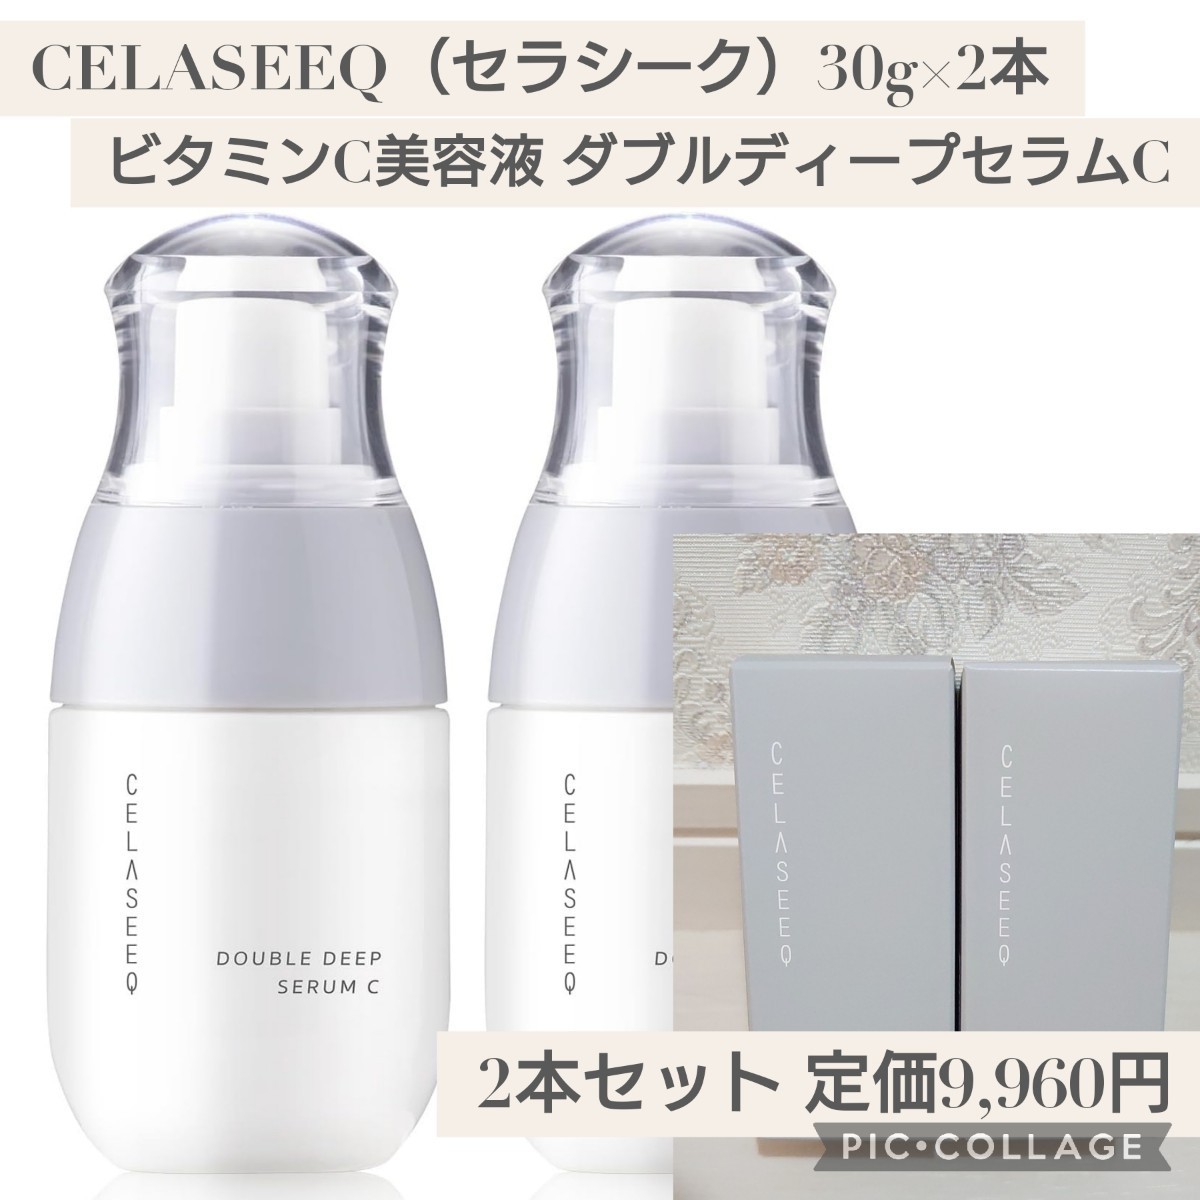 ビタミンC 美容液 CELASEEQ ダブルディープセラムC 30g - 美容液